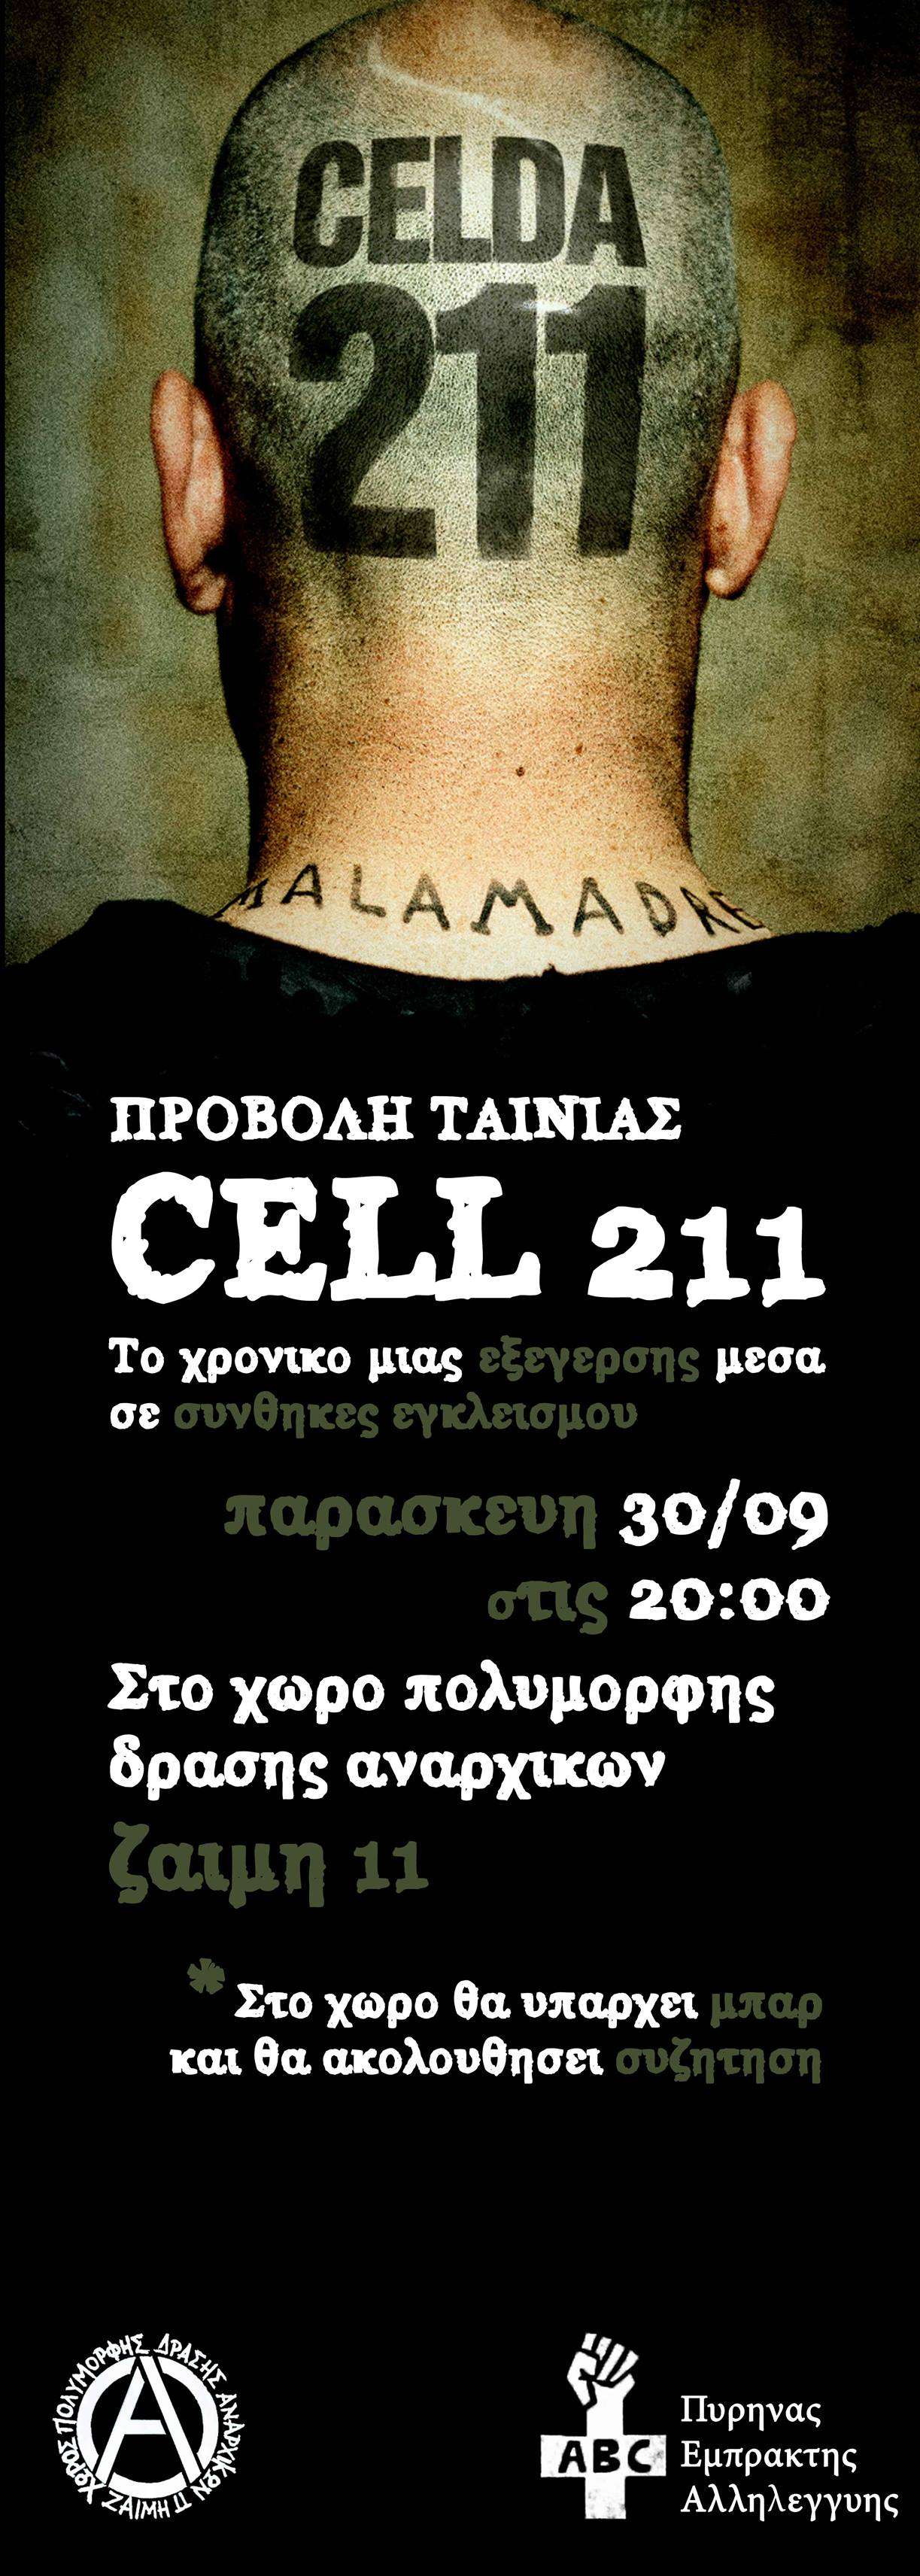 Αναρχικός Μαύρος Σταυρός: Προβολή ταινίας Cell 211 [Παρασκευή 30/09, 20:00]